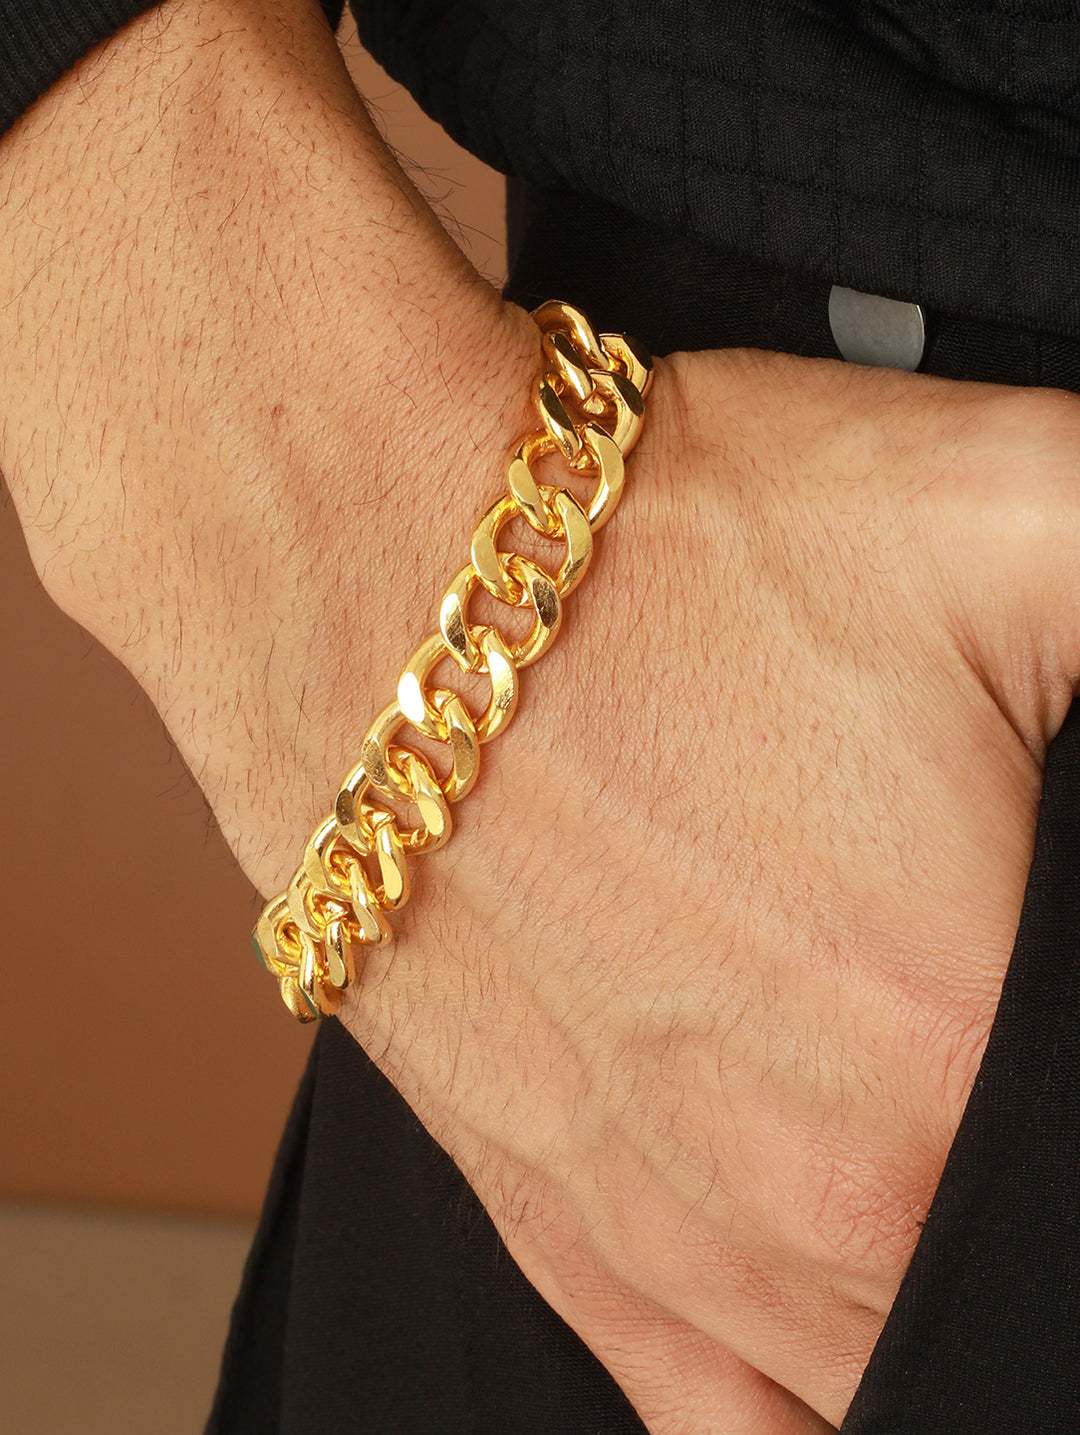 Priyaasi Bracelets : Buy Priyaasi Men Solid Gold Plated Curb Link Chain  Bracelet Online